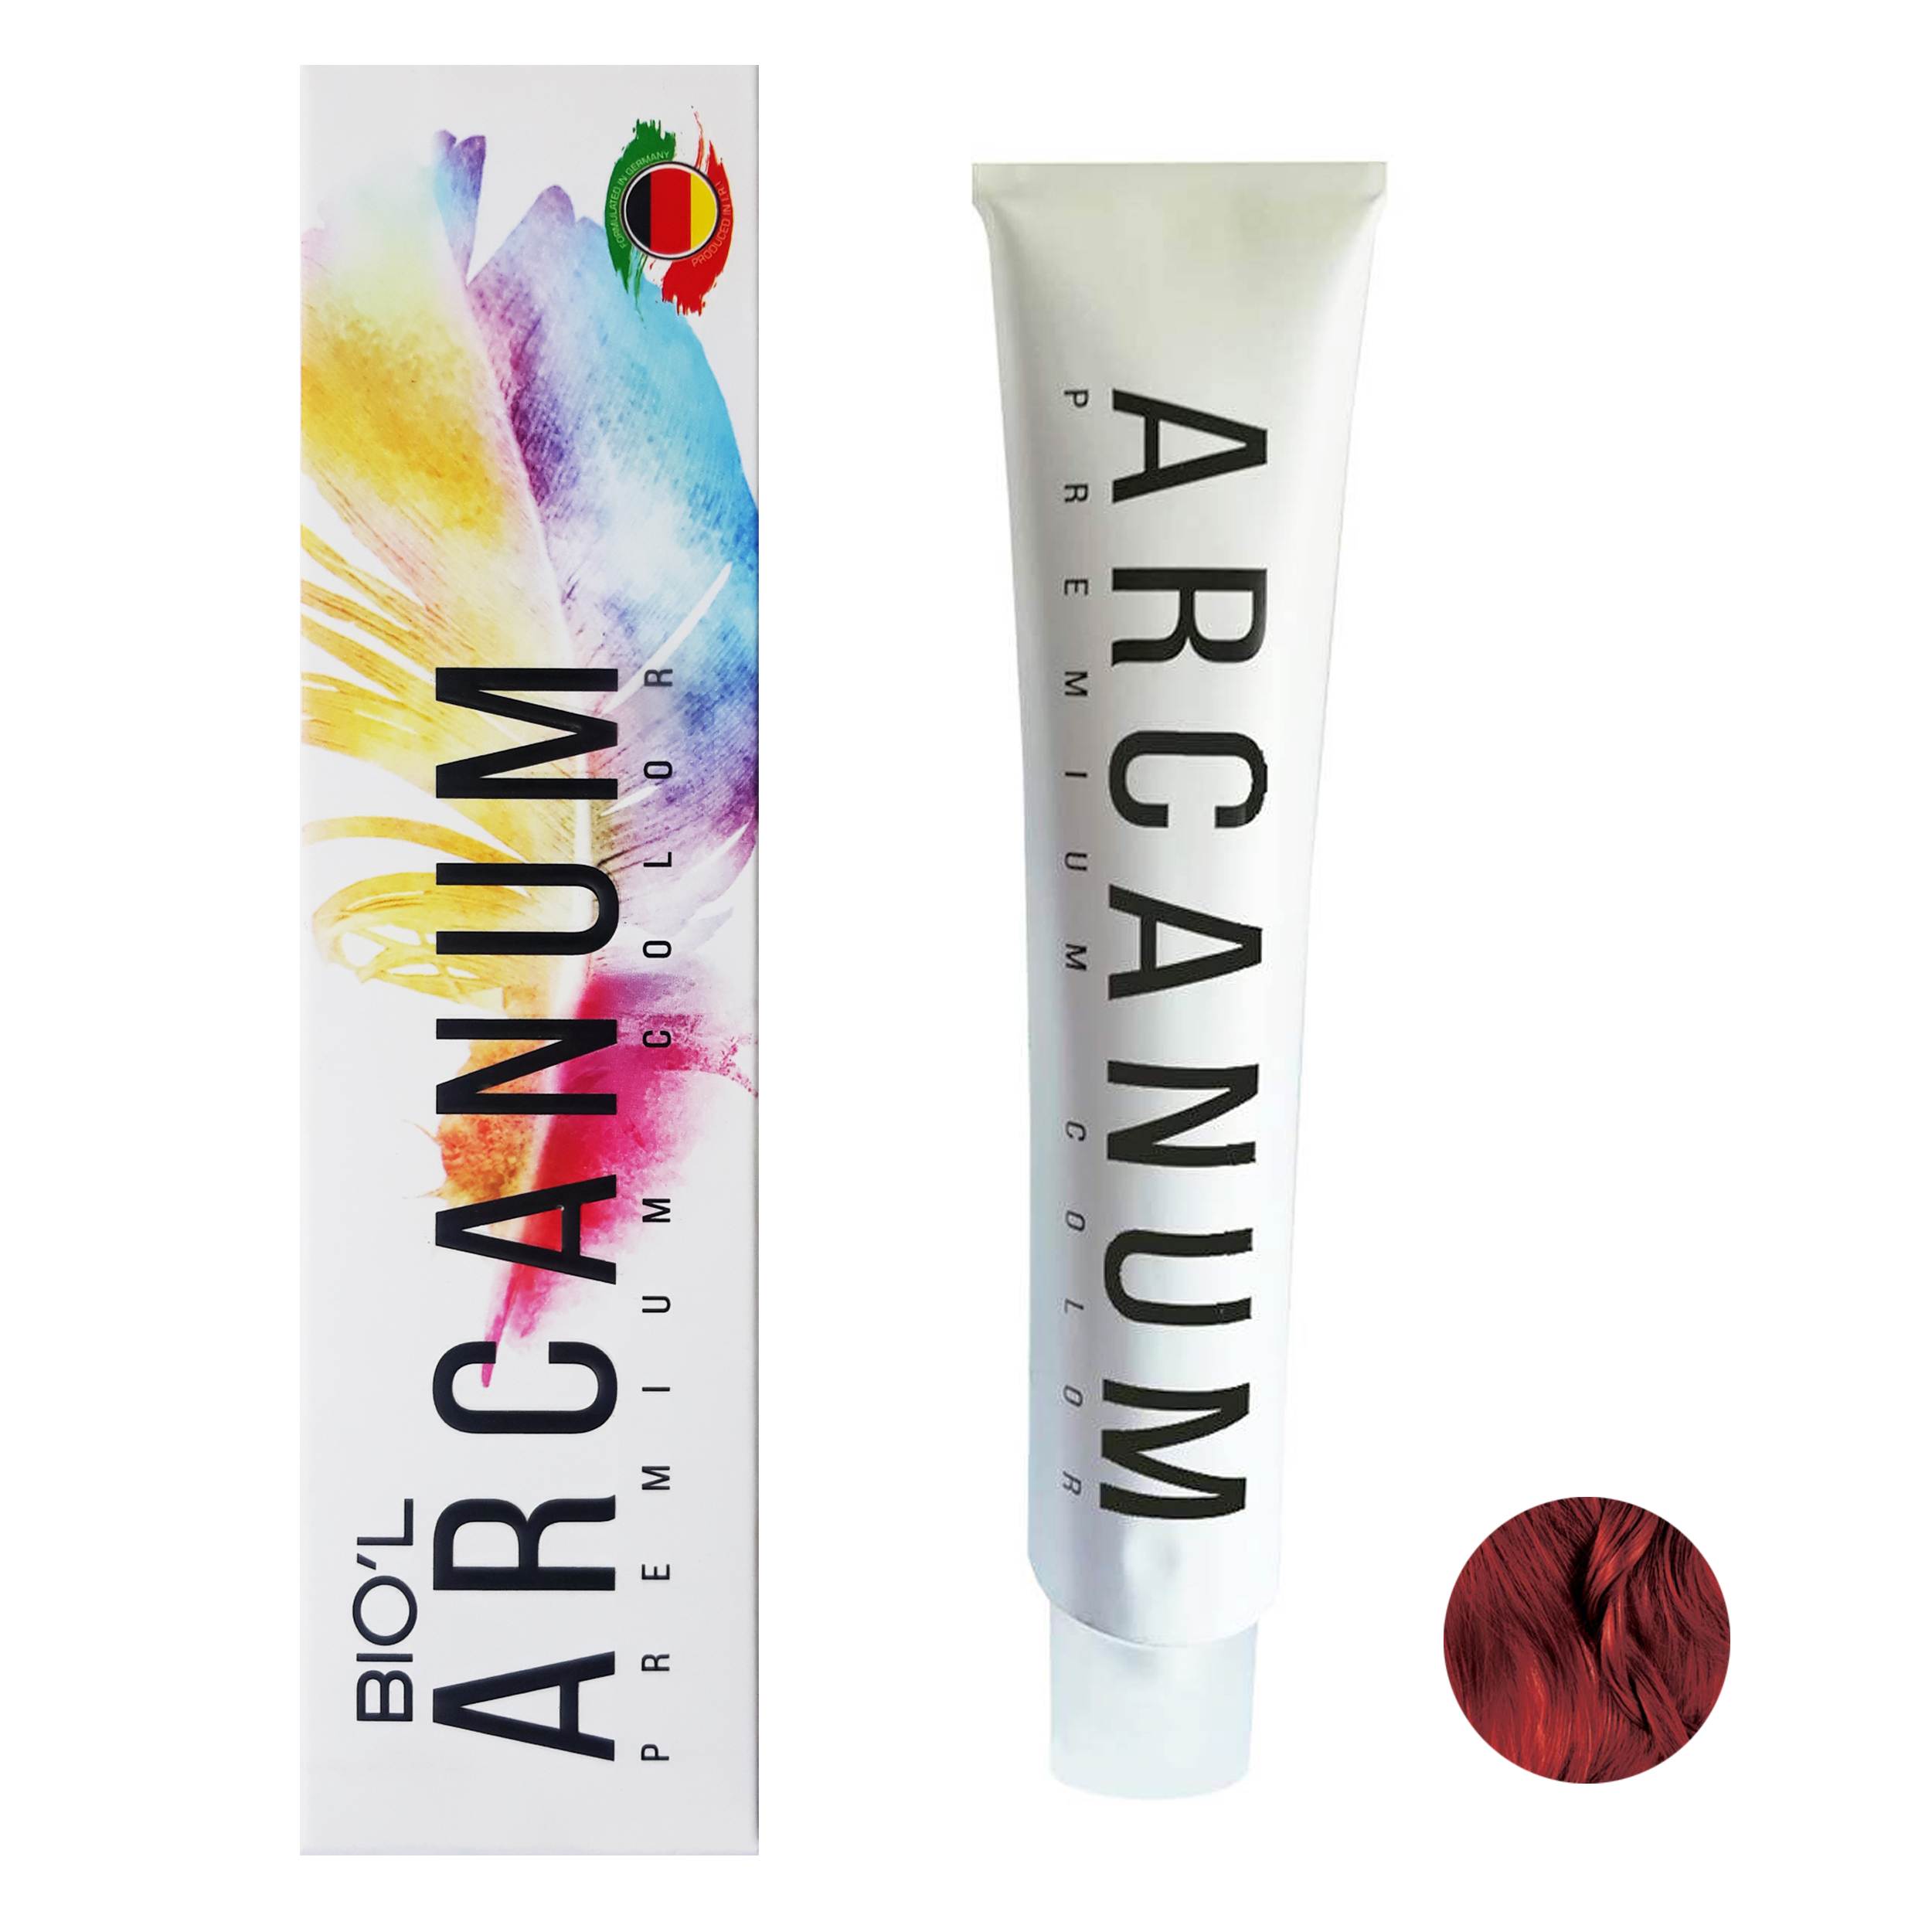  رنگ مو بیول مدل Arcanum شماره 6.59 حجم 120 میلی لیتر رنگ بلوند جگری تیره